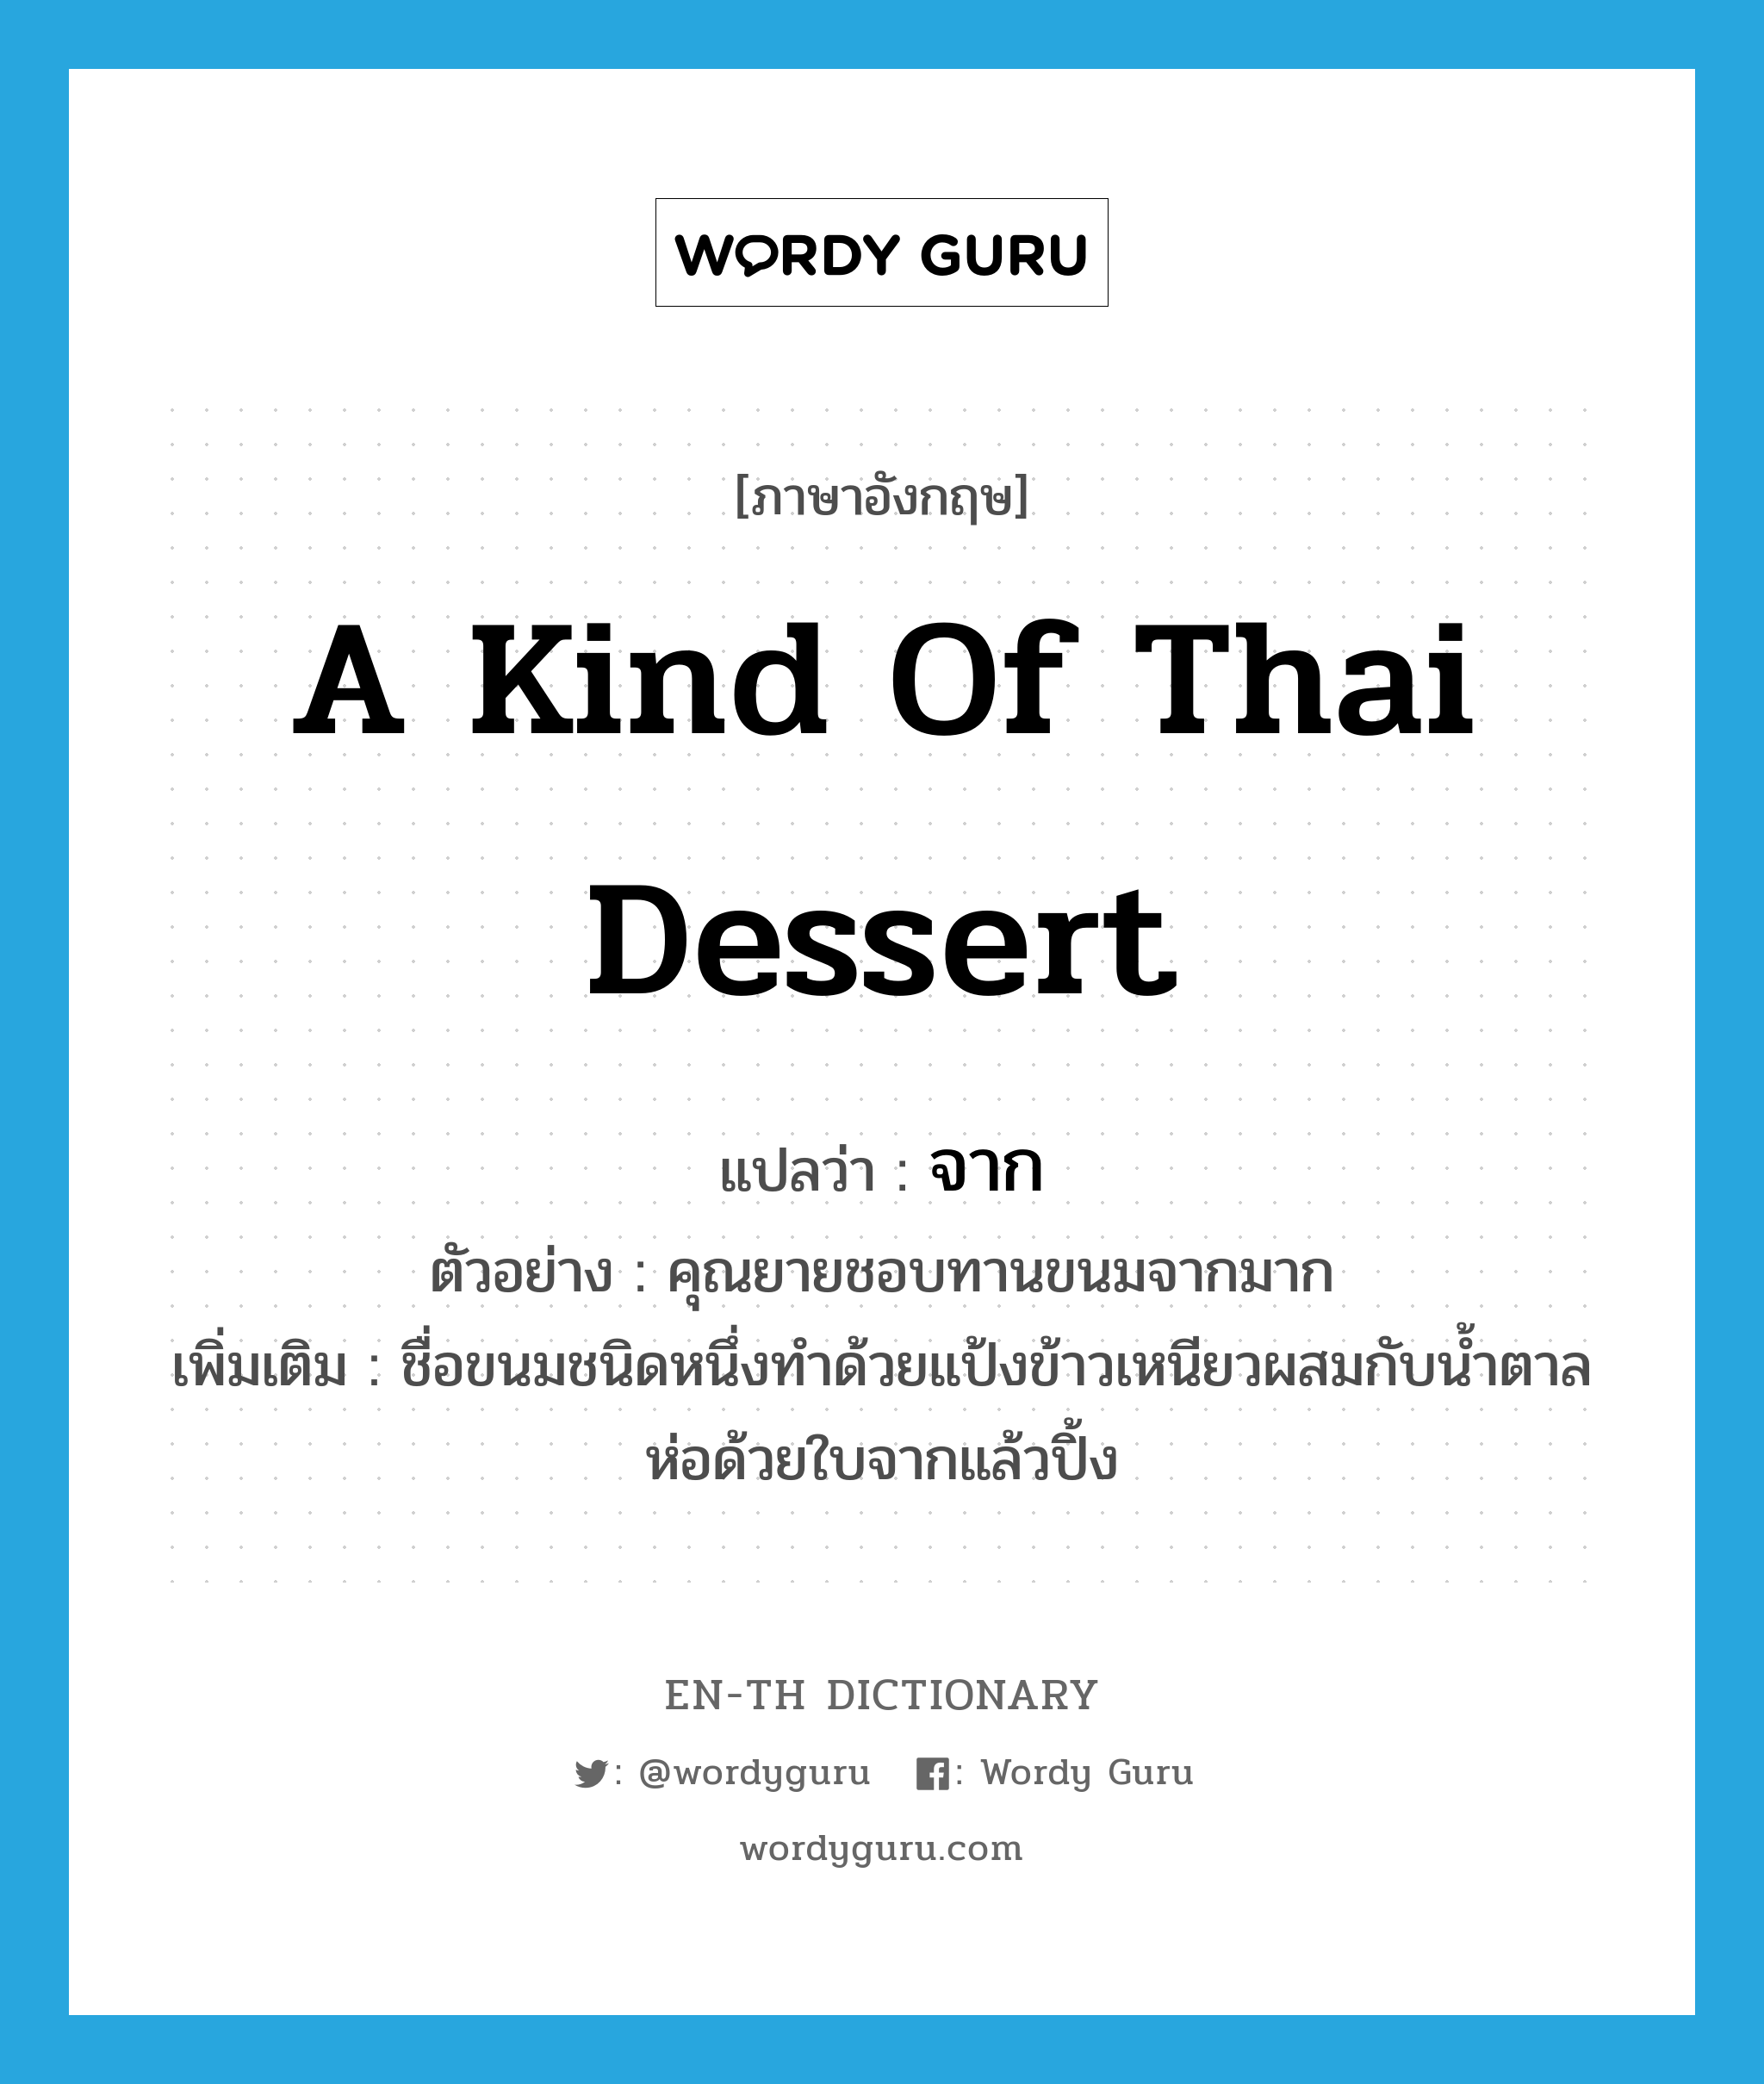 a kind of Thai dessert แปลว่า? คำศัพท์ในกลุ่มประเภท N, คำศัพท์ภาษาอังกฤษ a kind of Thai dessert แปลว่า จาก ประเภท N ตัวอย่าง คุณยายชอบทานขนมจากมาก เพิ่มเติม ชื่อขนมชนิดหนึ่งทำด้วยแป้งข้าวเหนียวผสมกับน้ำตาล ห่อด้วยใบจากแล้วปิ้ง หมวด N